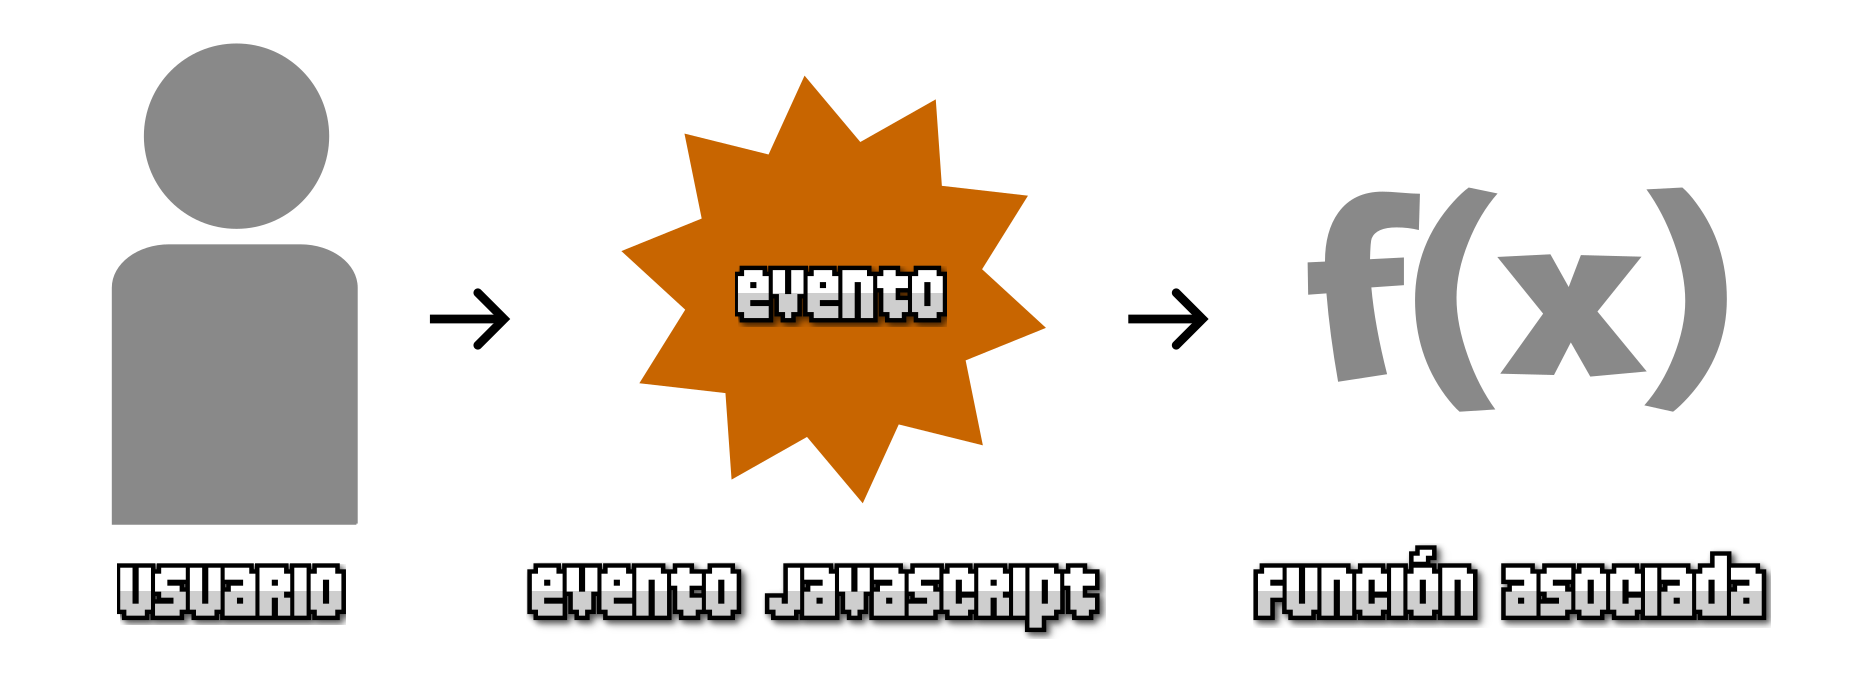 ¿Qué es un evento Javascript?